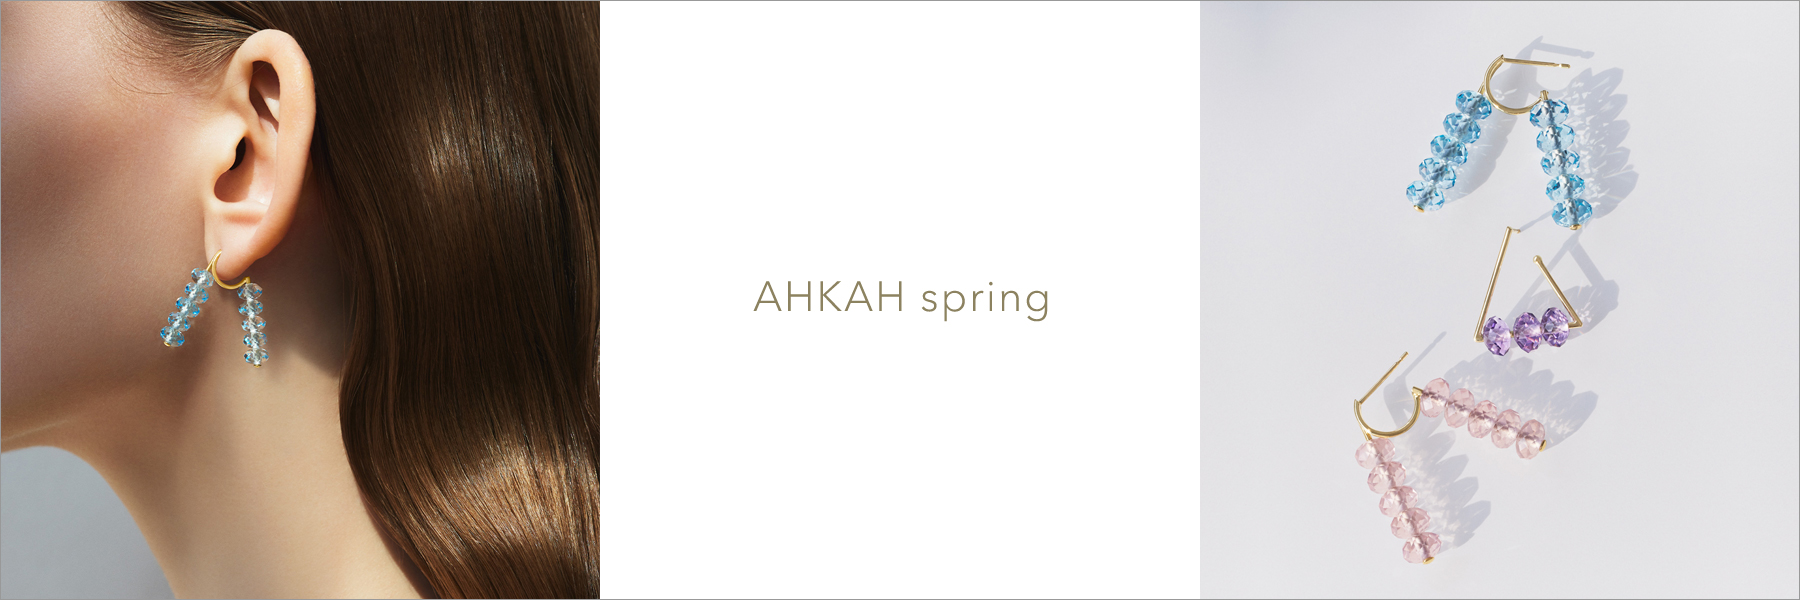 AHKAH spring